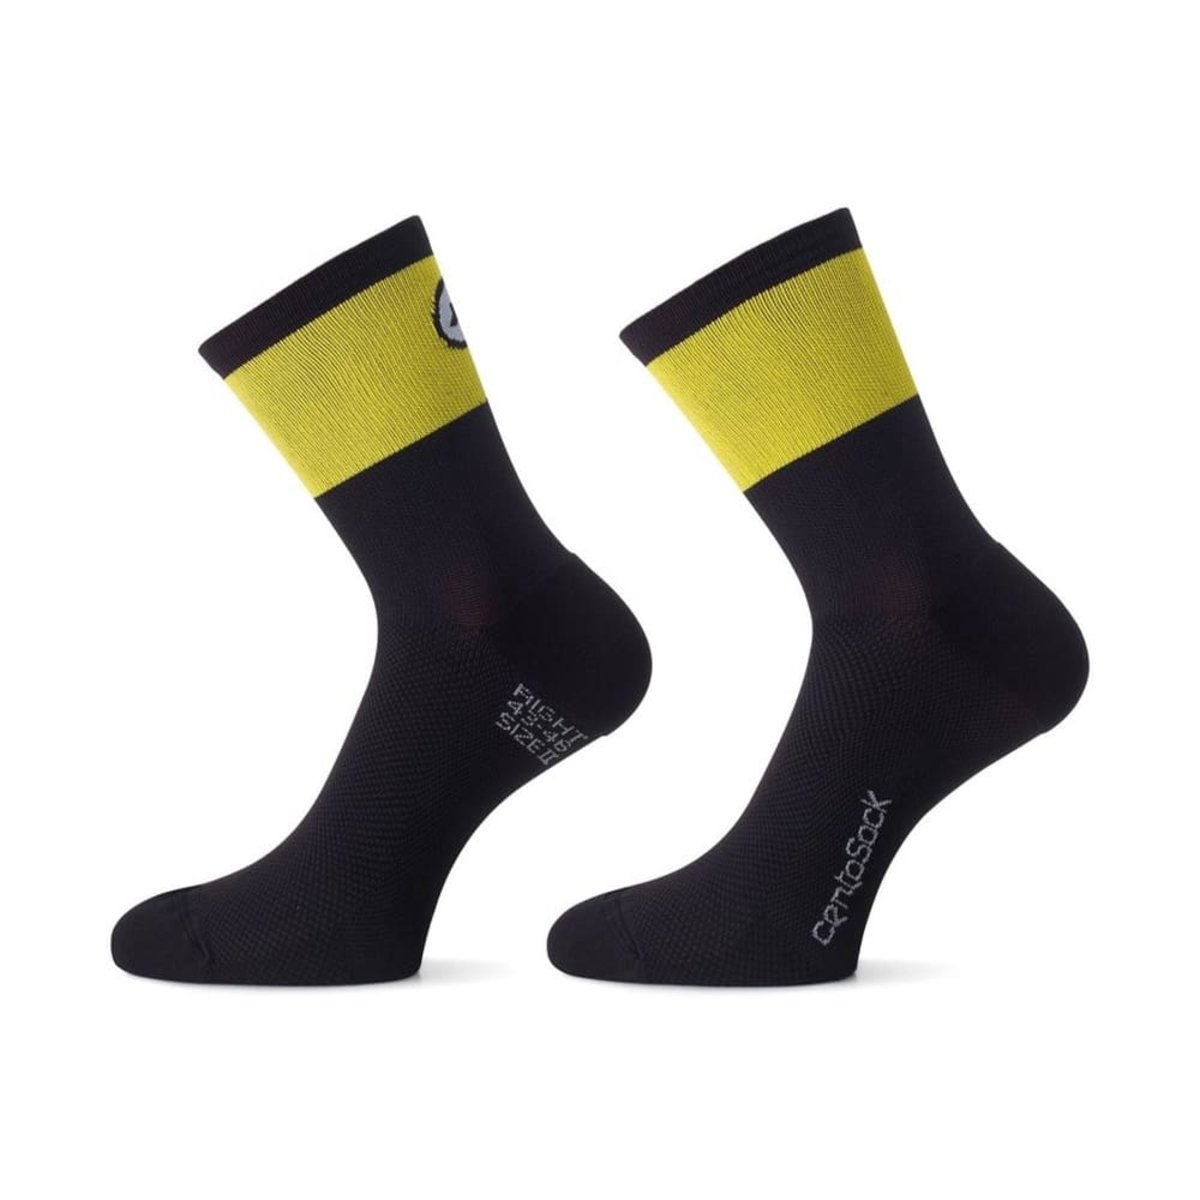 Носки ASSOS Cento Socks Evo 8 Volt Yellow, желто-черные 0/35-38